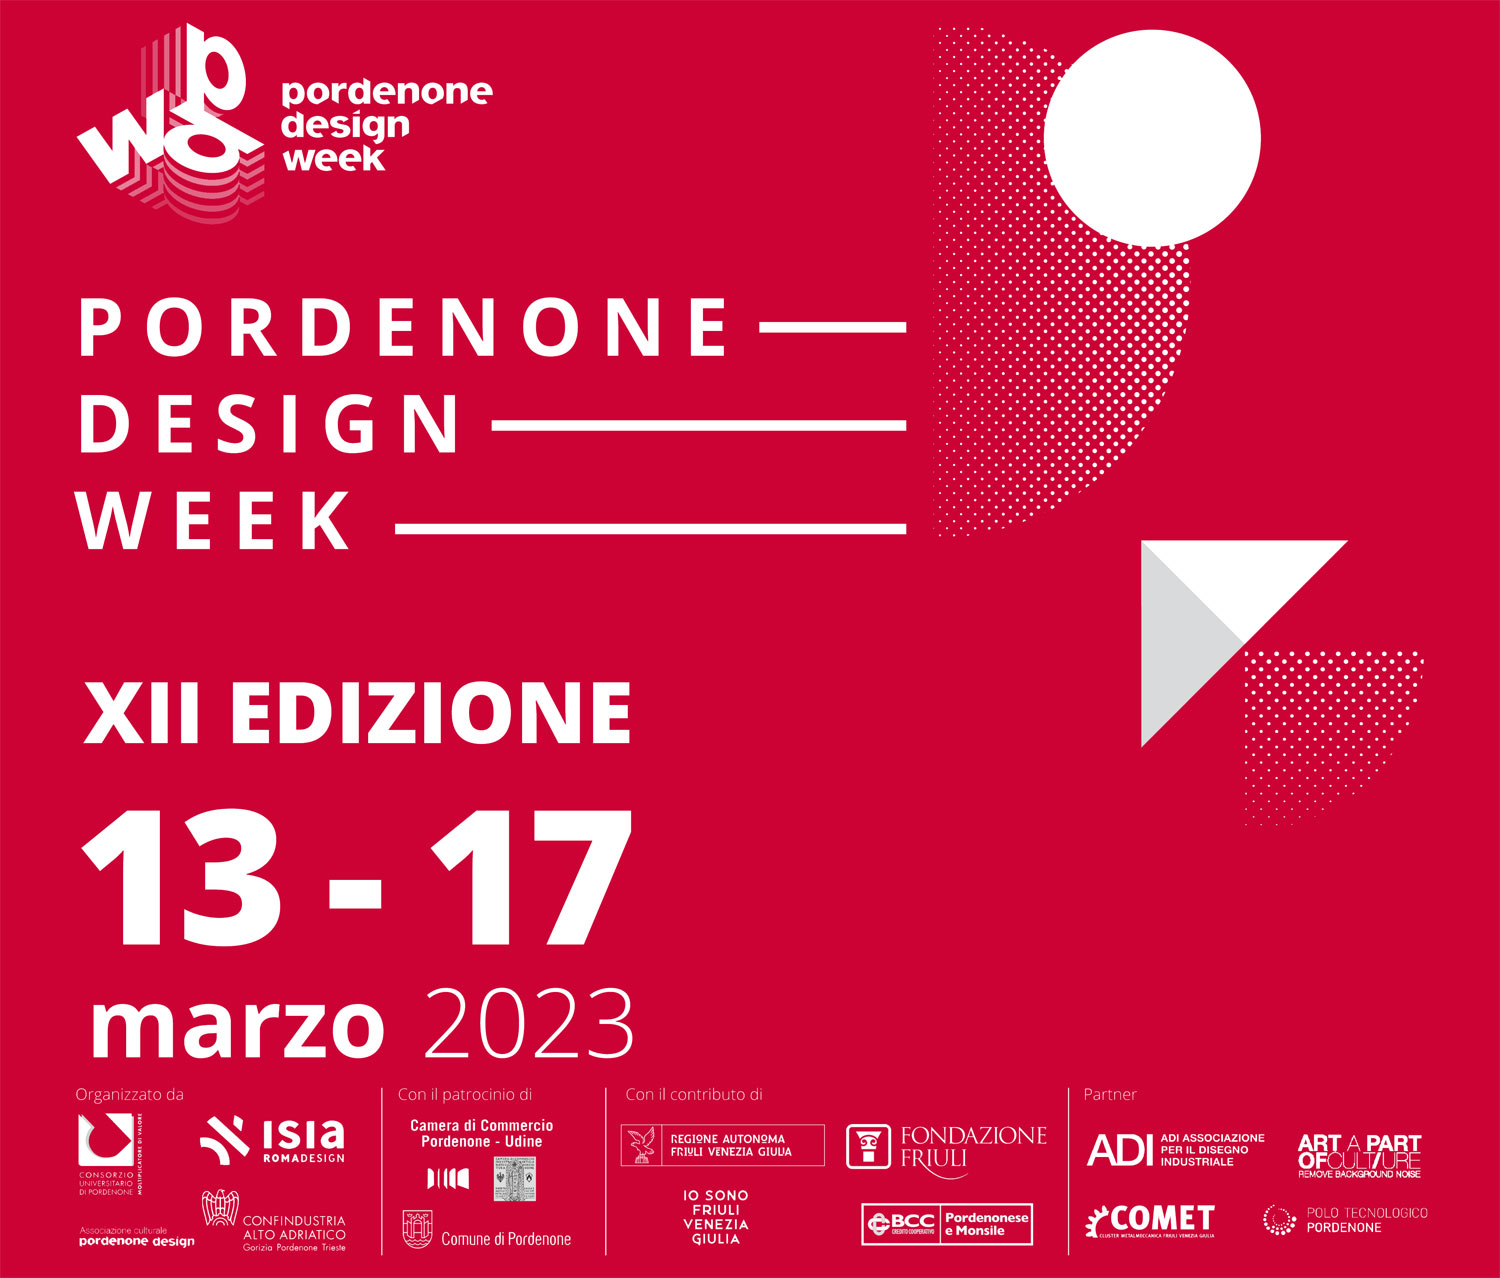 Pordenone capitale del Design: dal 13 al 17 marzo la 12^ edizione della Pordenone Design Week